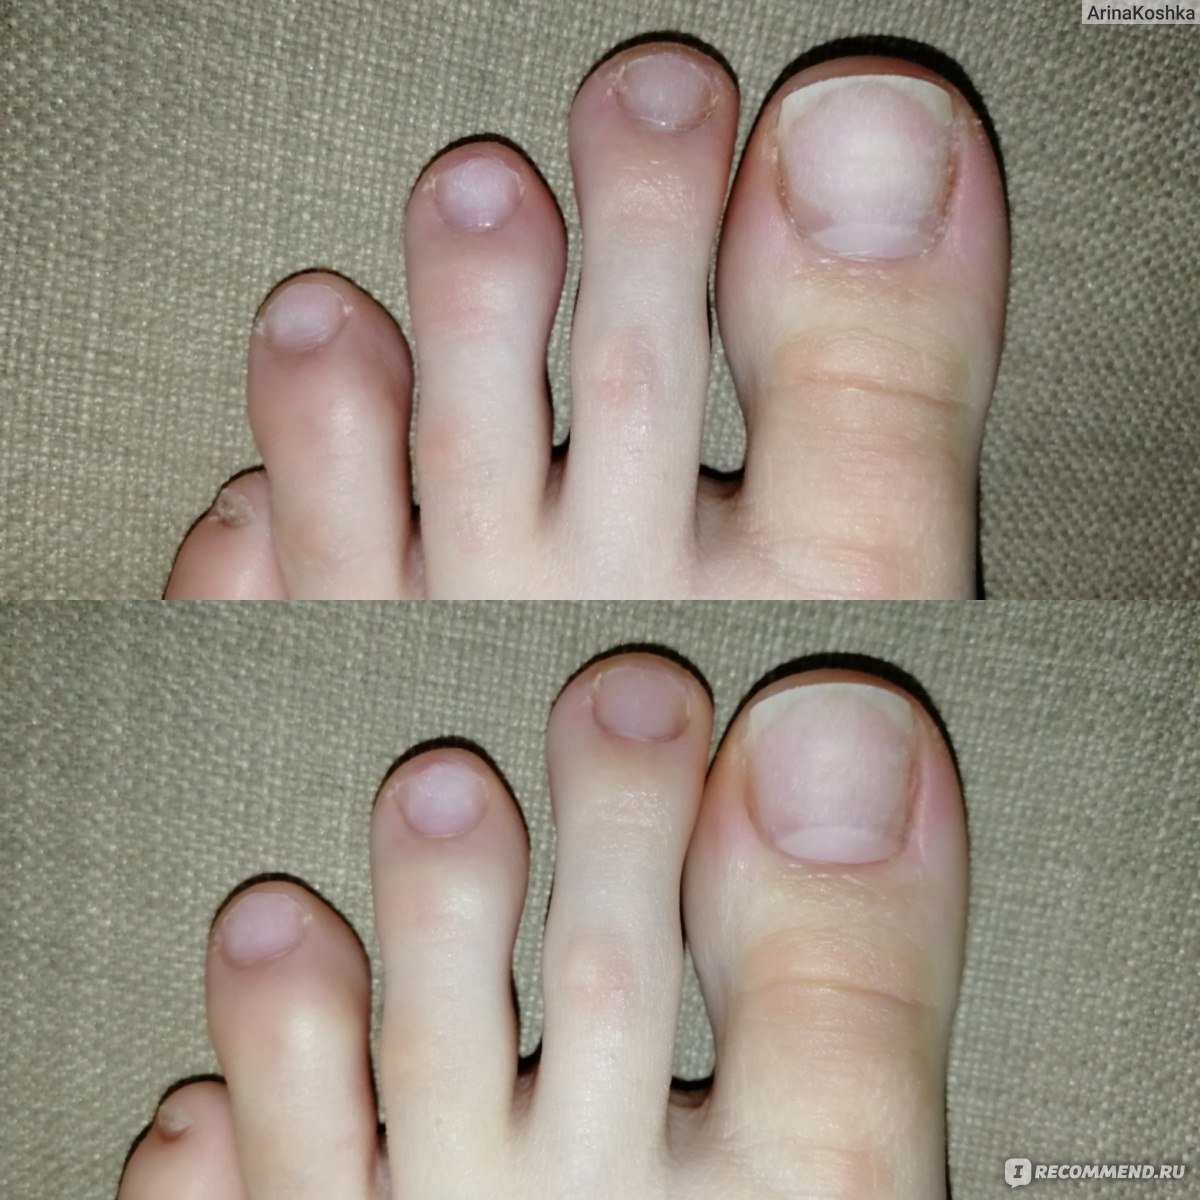 Педикюр до и после. Ногти после педикюра без покрытия. Мужской педикюр до и после. Ногти до и после педикюра.